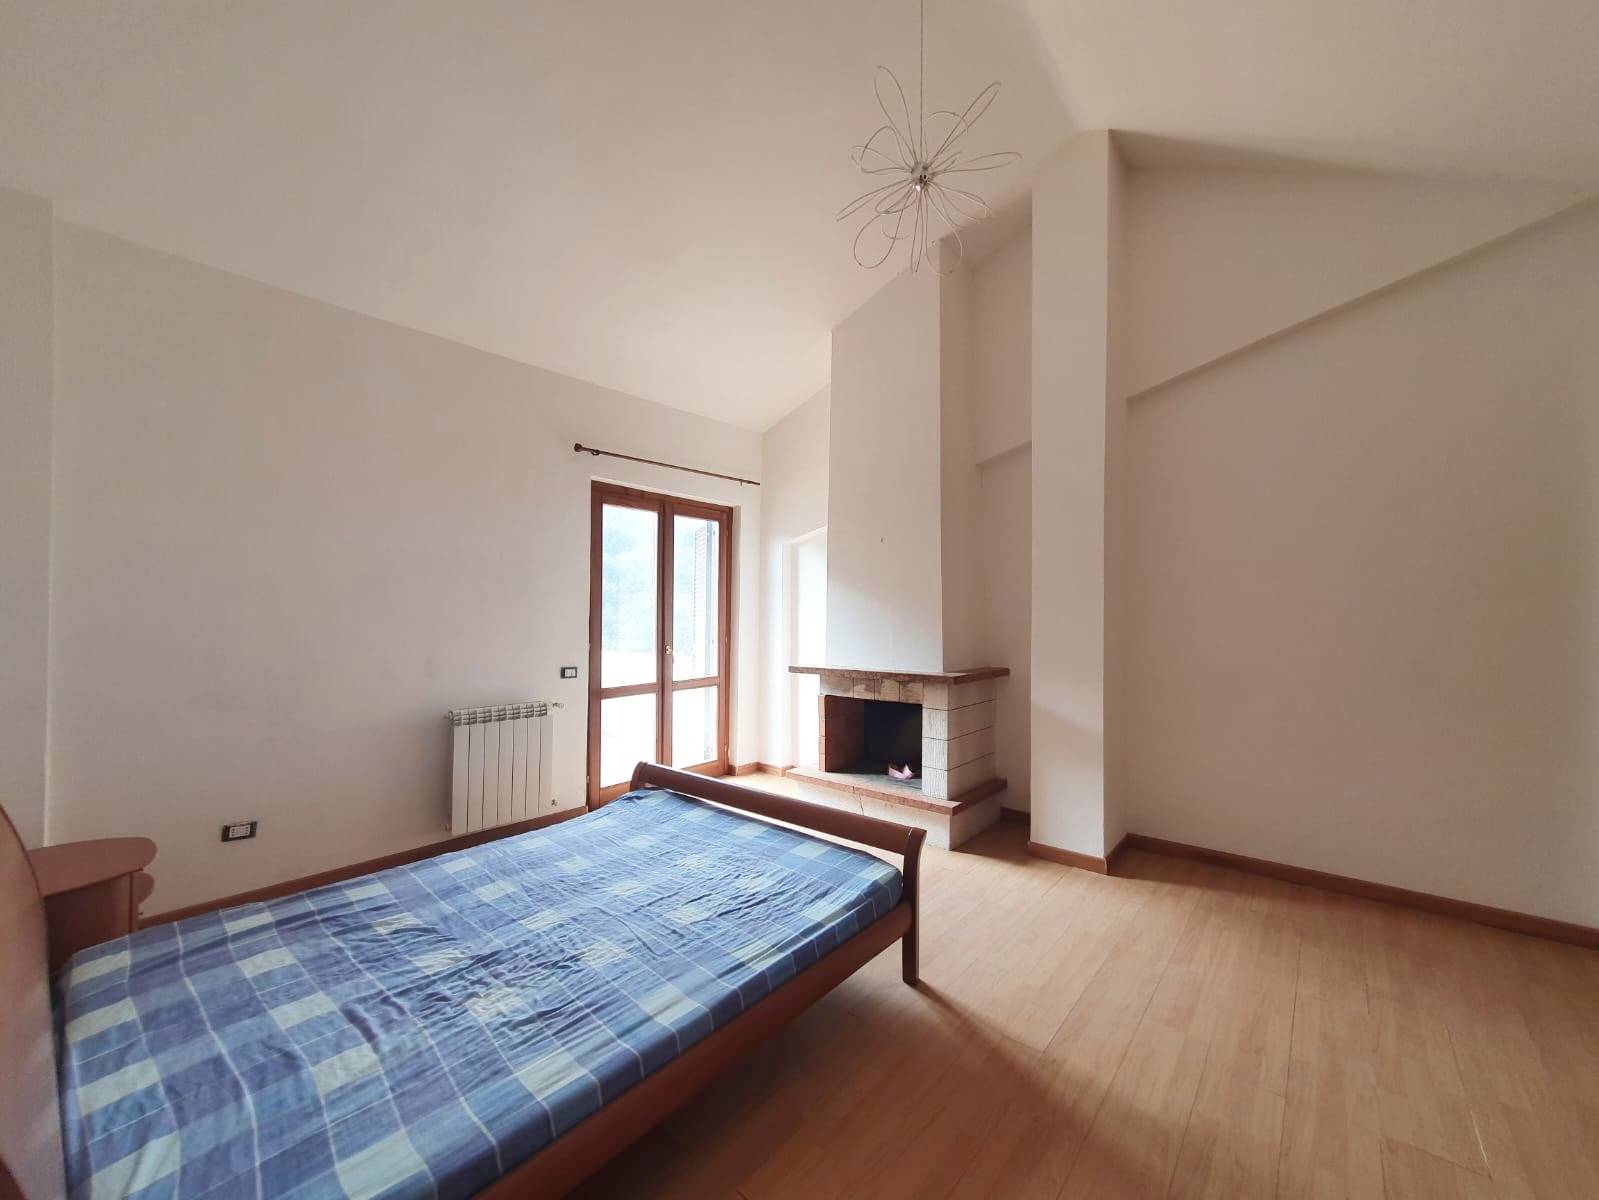 Appartamento in vendita a Scandriglia, 3 locali, zona Località: POGGIO CORESE, prezzo € 55.000 | PortaleAgenzieImmobiliari.it